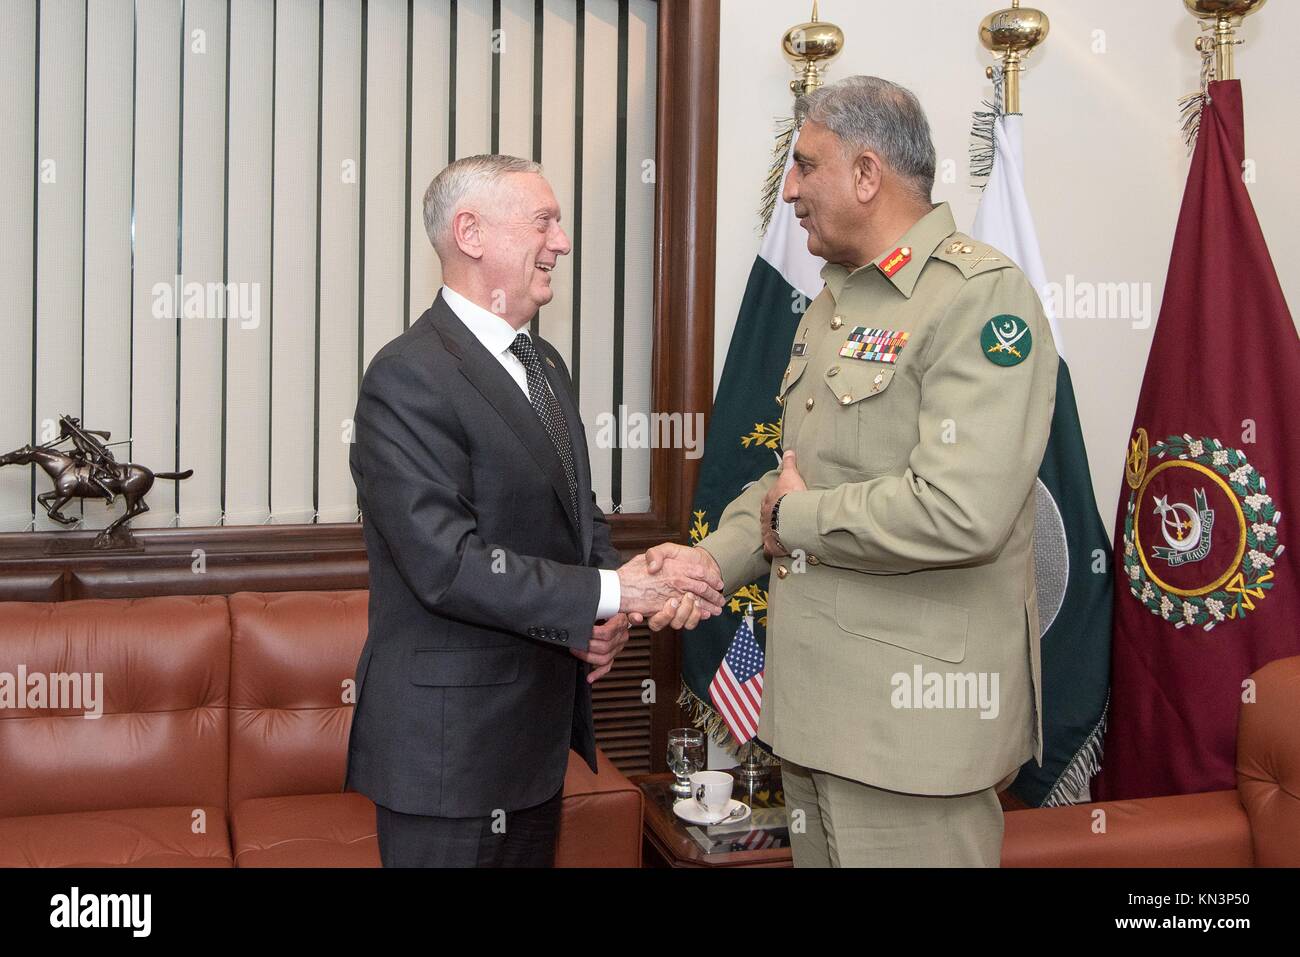 El secretario de defensa estadounidense James Mattis (izquierda) se reúne con el jefe del Estado Mayor del ejército pakistaní qamar javed bajwa diciembre 4, 2017 en Islamabad, Pakistán. (Foto por amber smith via planetpix i.) Foto de stock